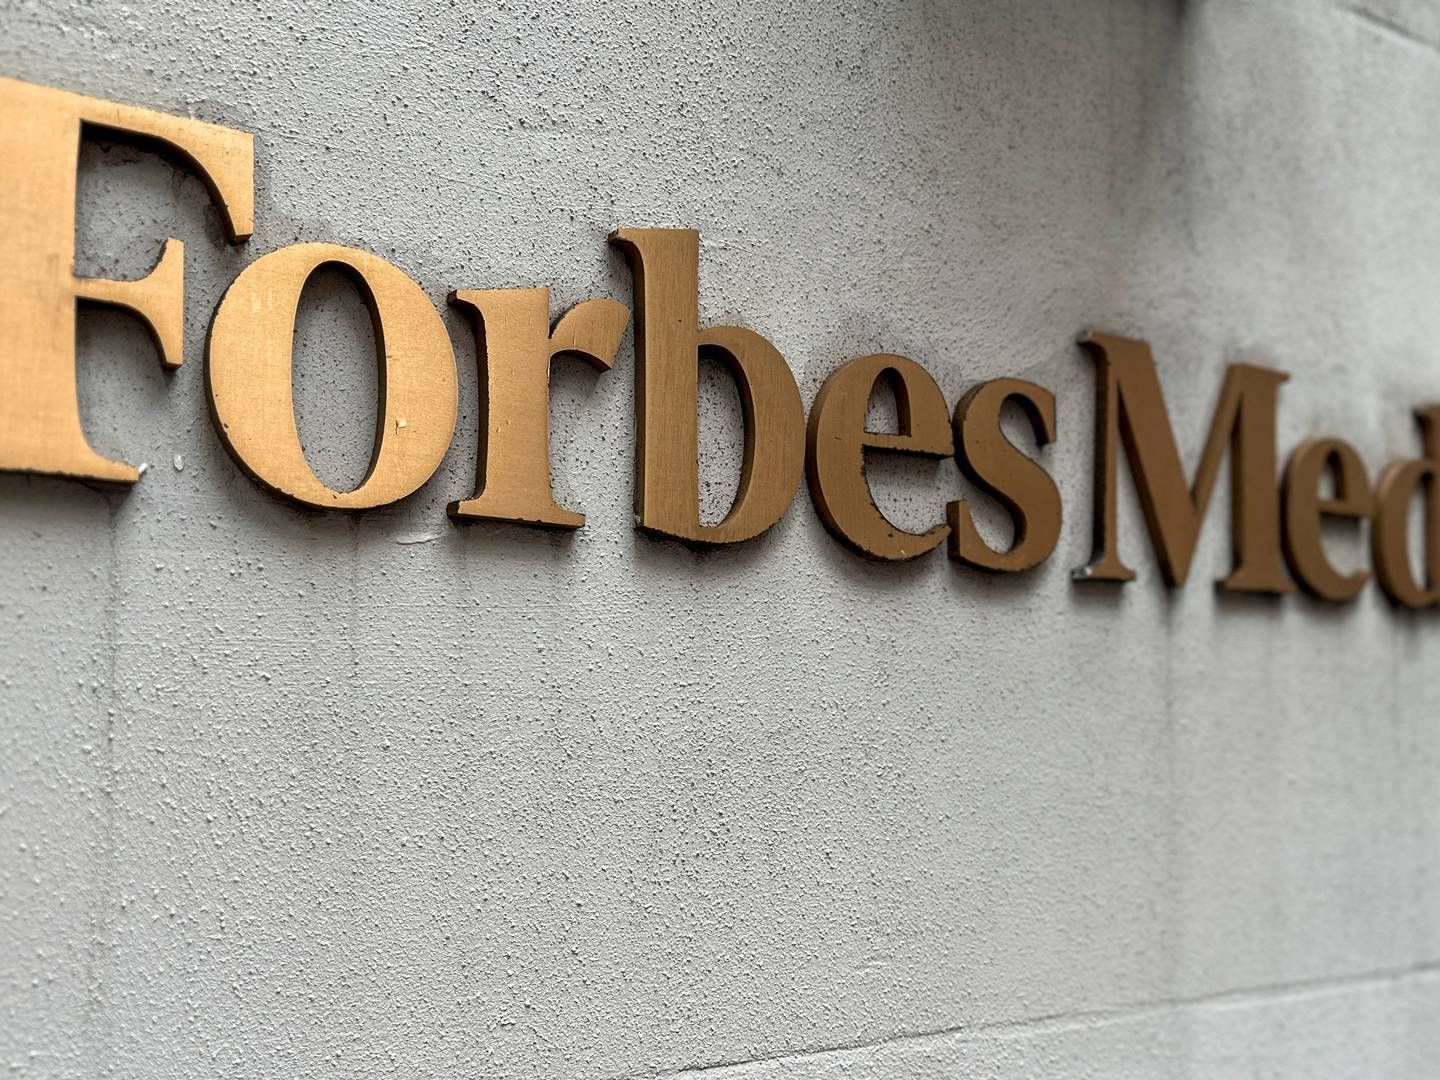 Efter The Wall Street Journal har rettet henvendelse til Forbes, er websitet lukket ned. | Foto: Roselle Chen/Reuters/Ritzau Scanpix